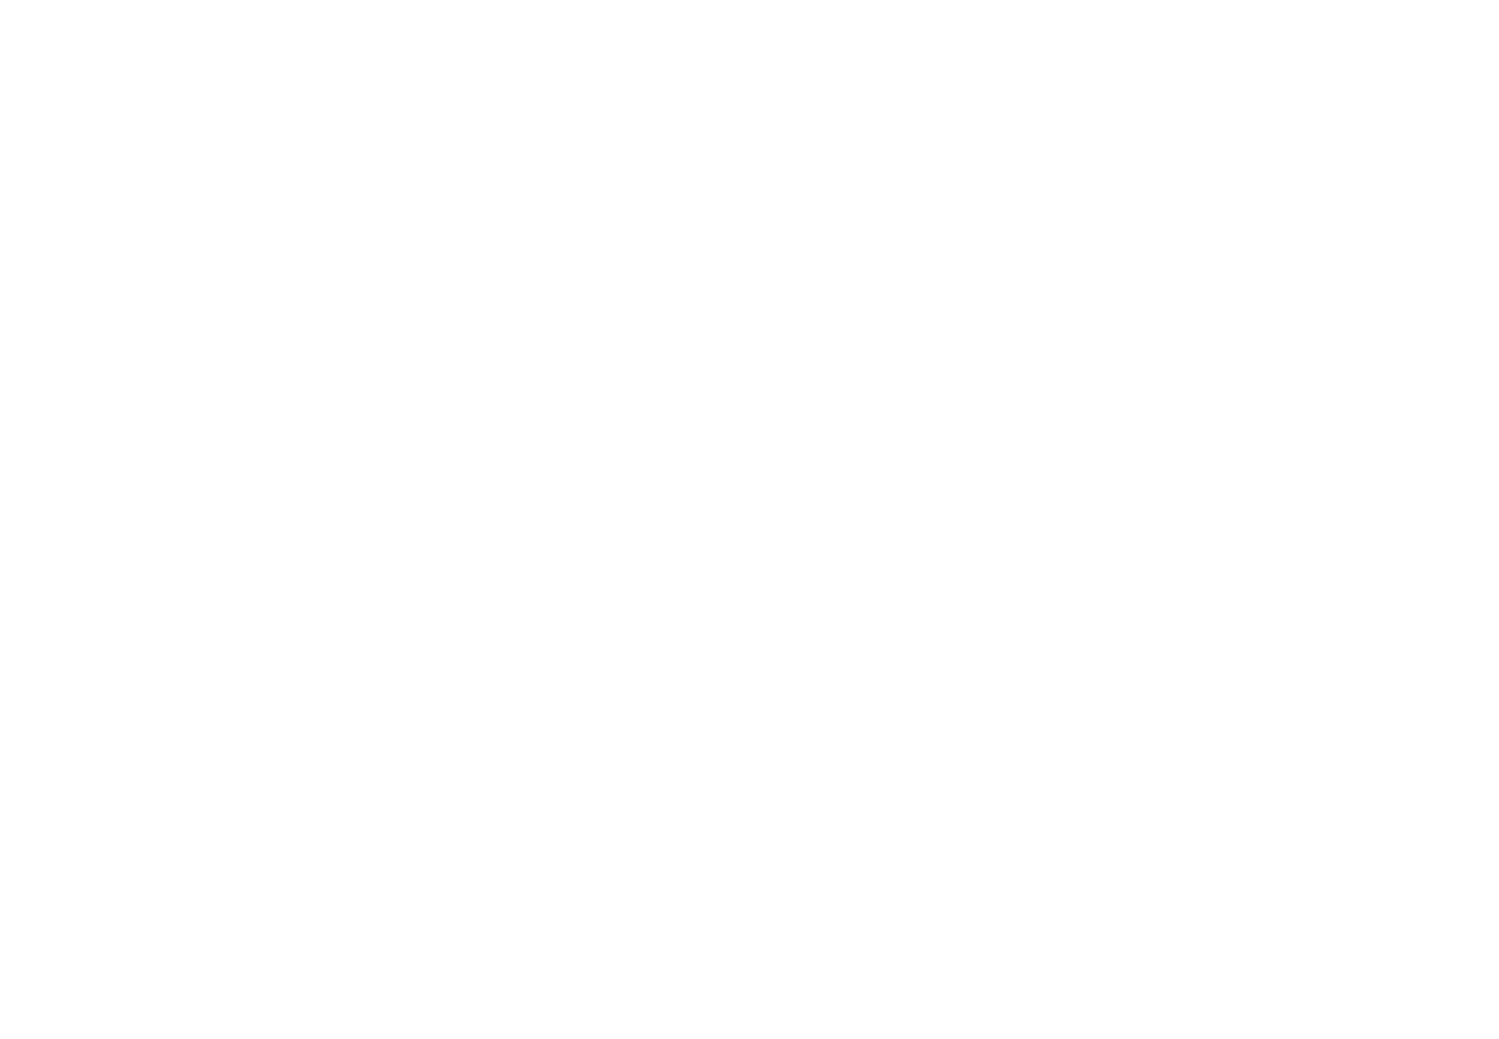 Cohu logo for dark backgrounds (transparent PNG)